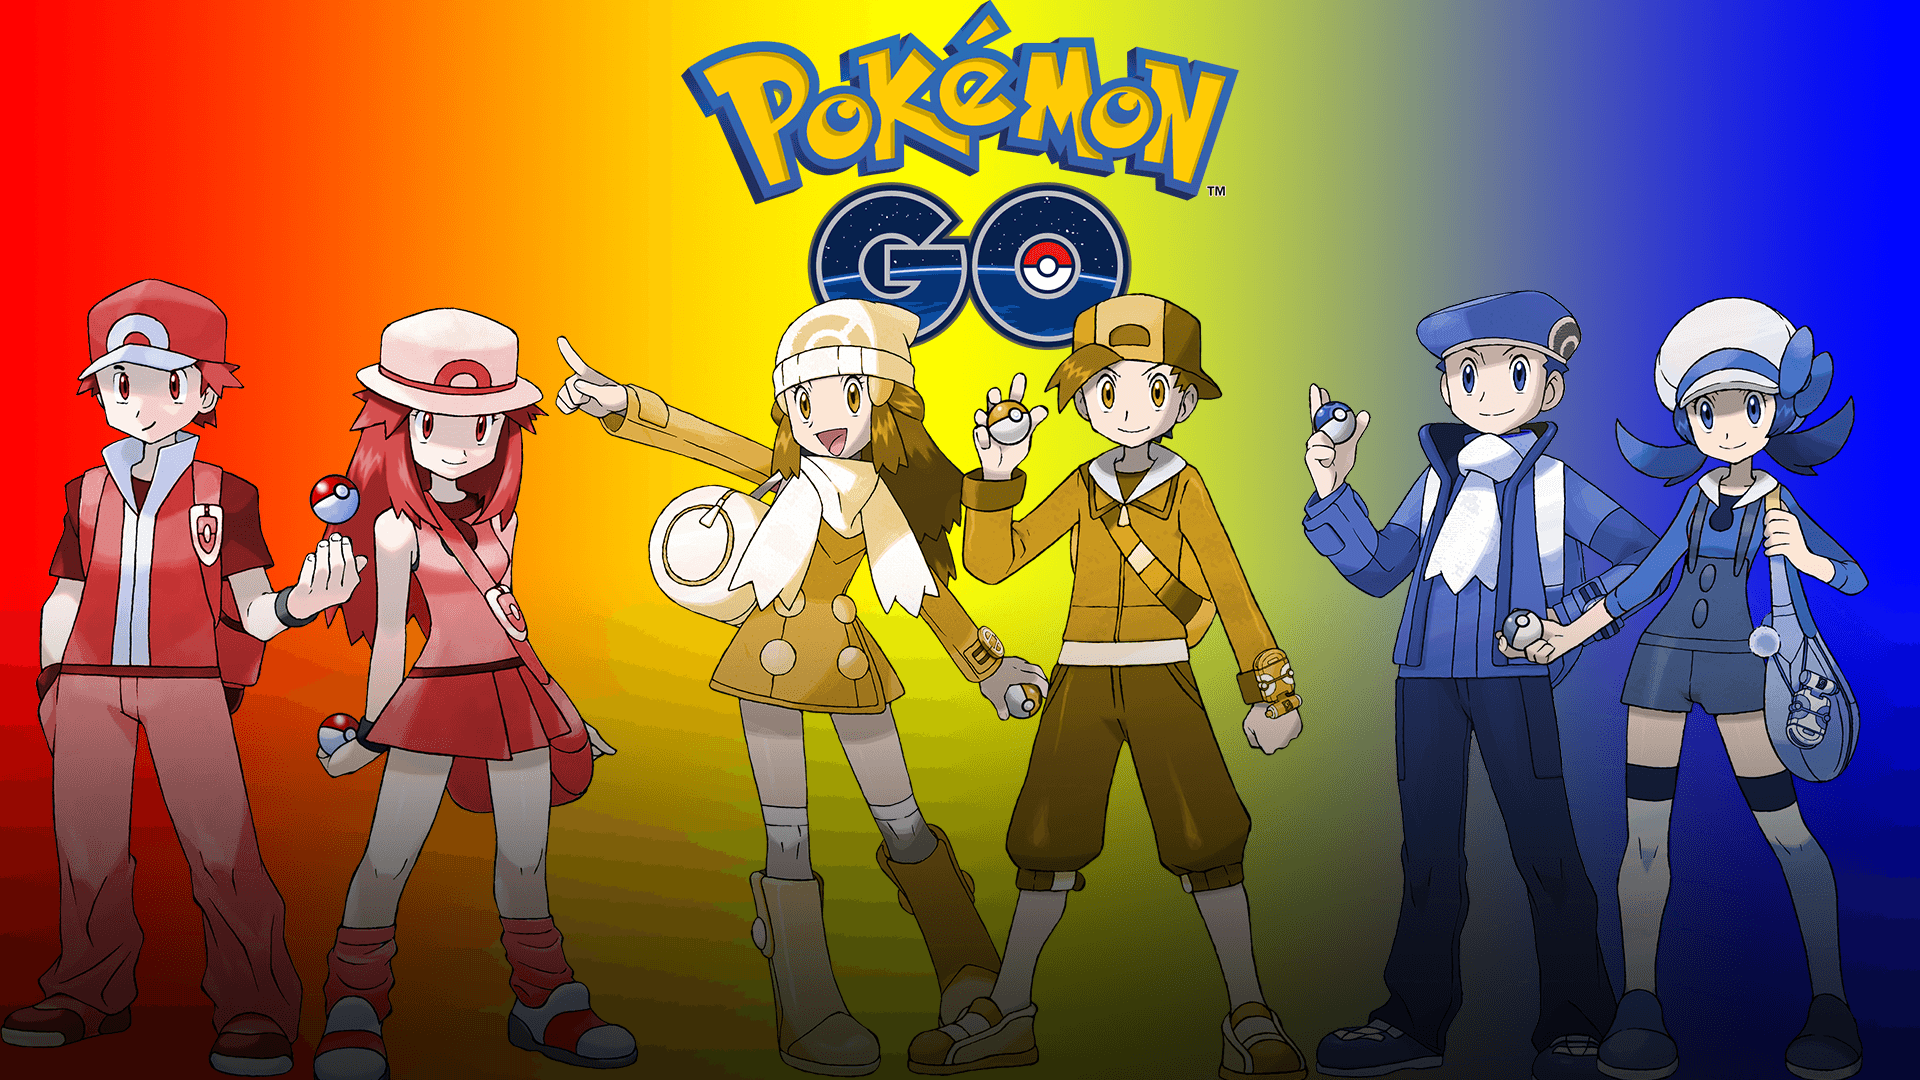 I made a desktop wallpaper for pokemon go! So here's a little